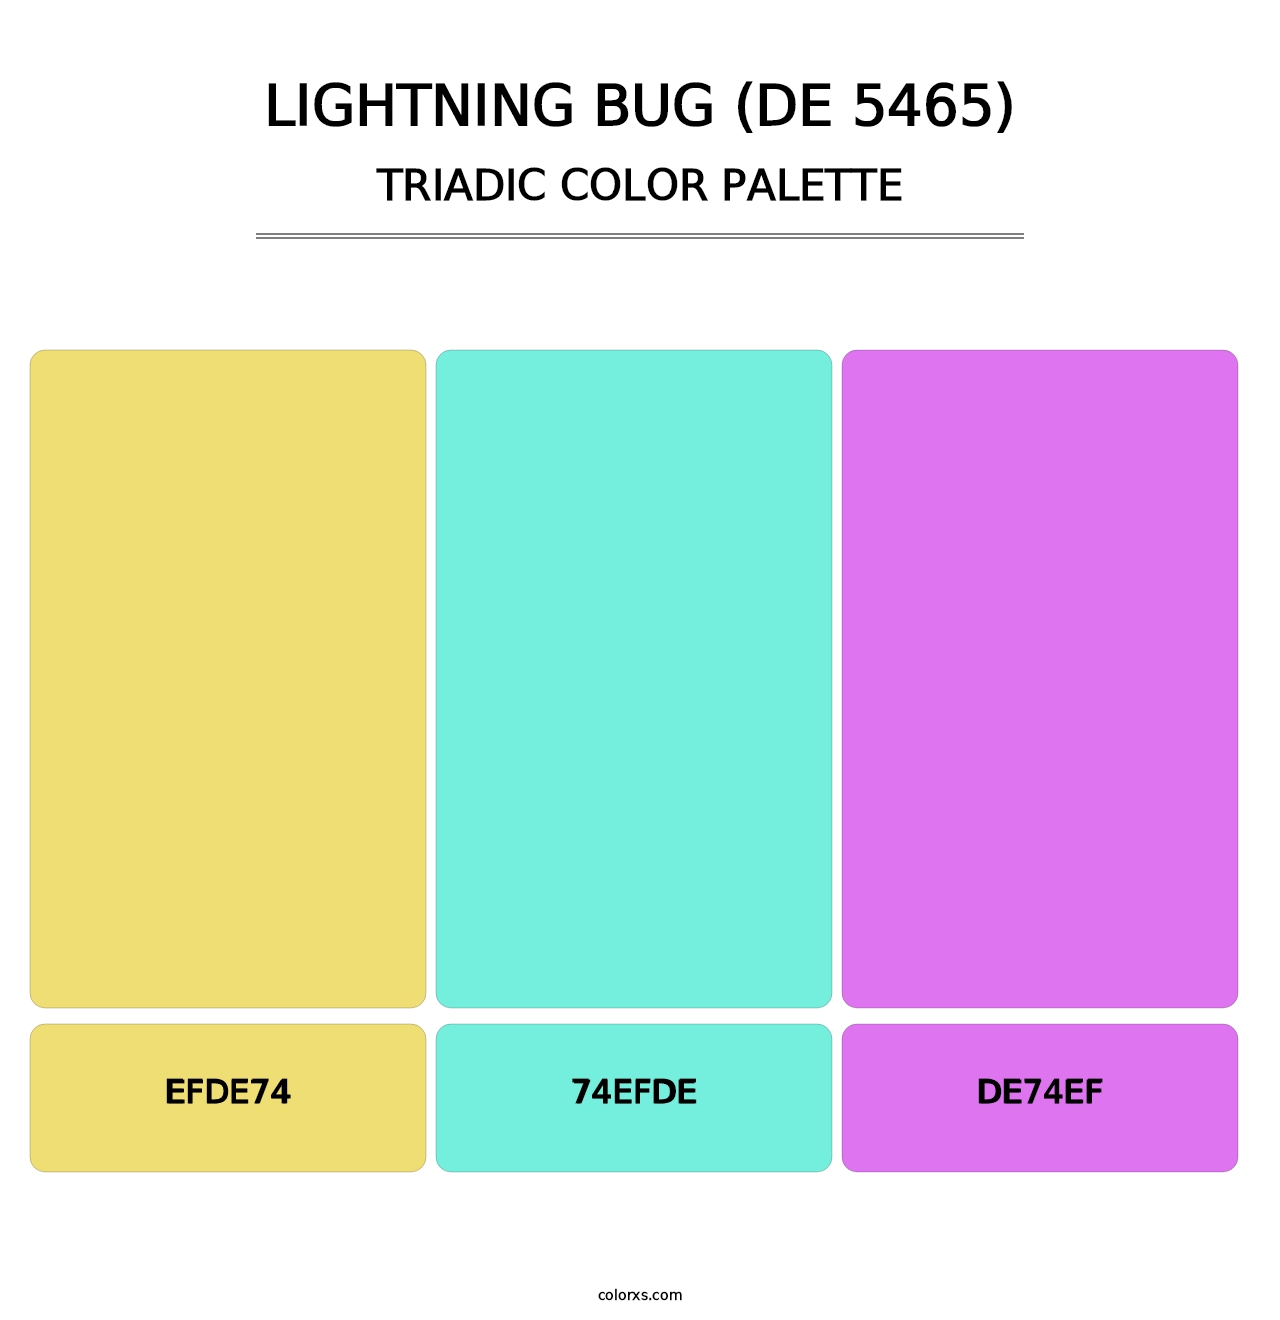 Lightning Bug (DE 5465) - Triadic Color Palette